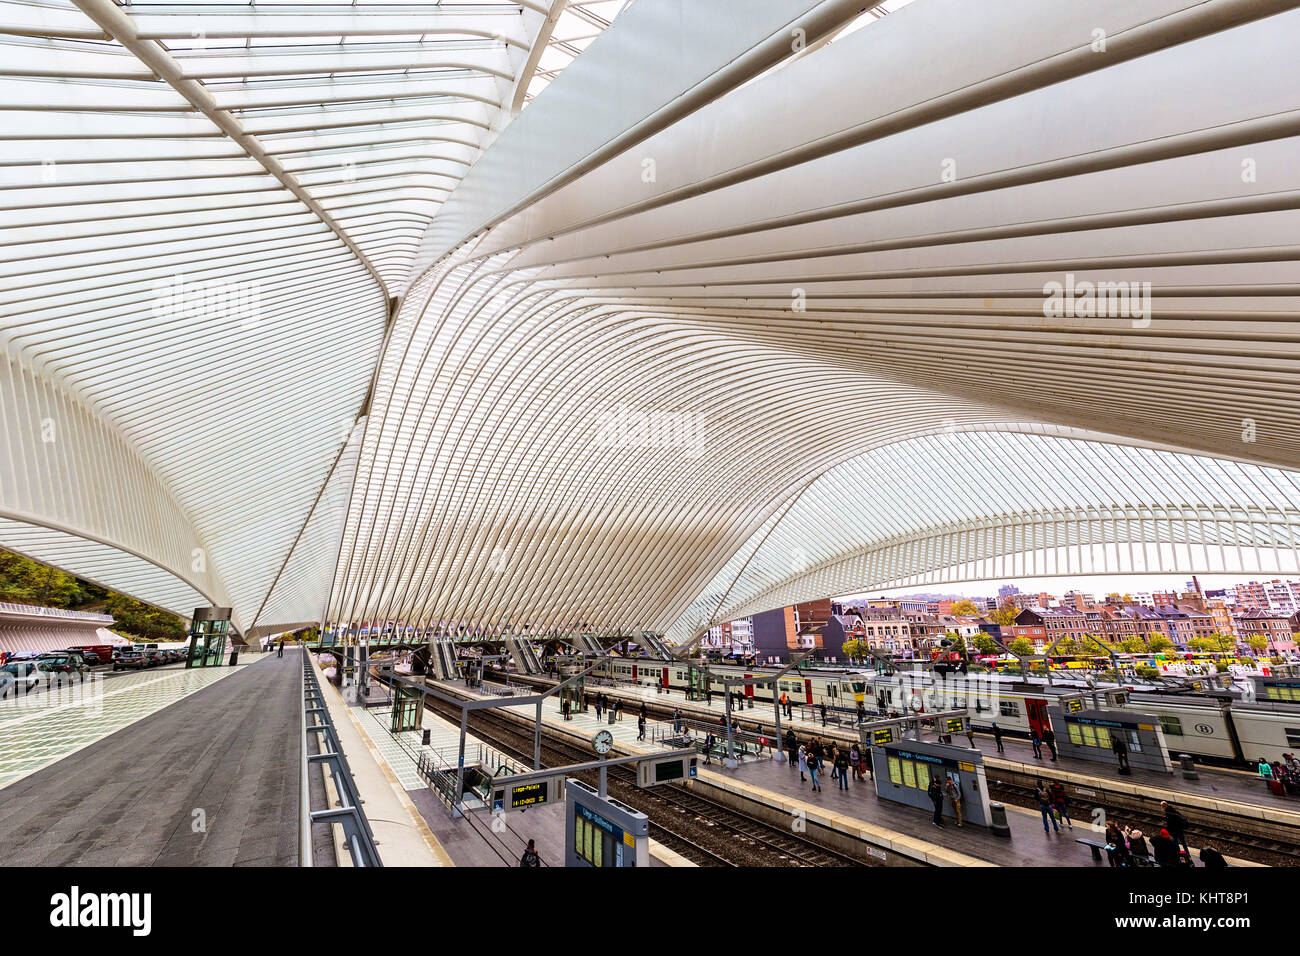 Liege, Belgien - November 2017: Bahnhof Guillemins liege - entworfen von dem berühmten Architekten Santiago Calatrava. Stockfoto